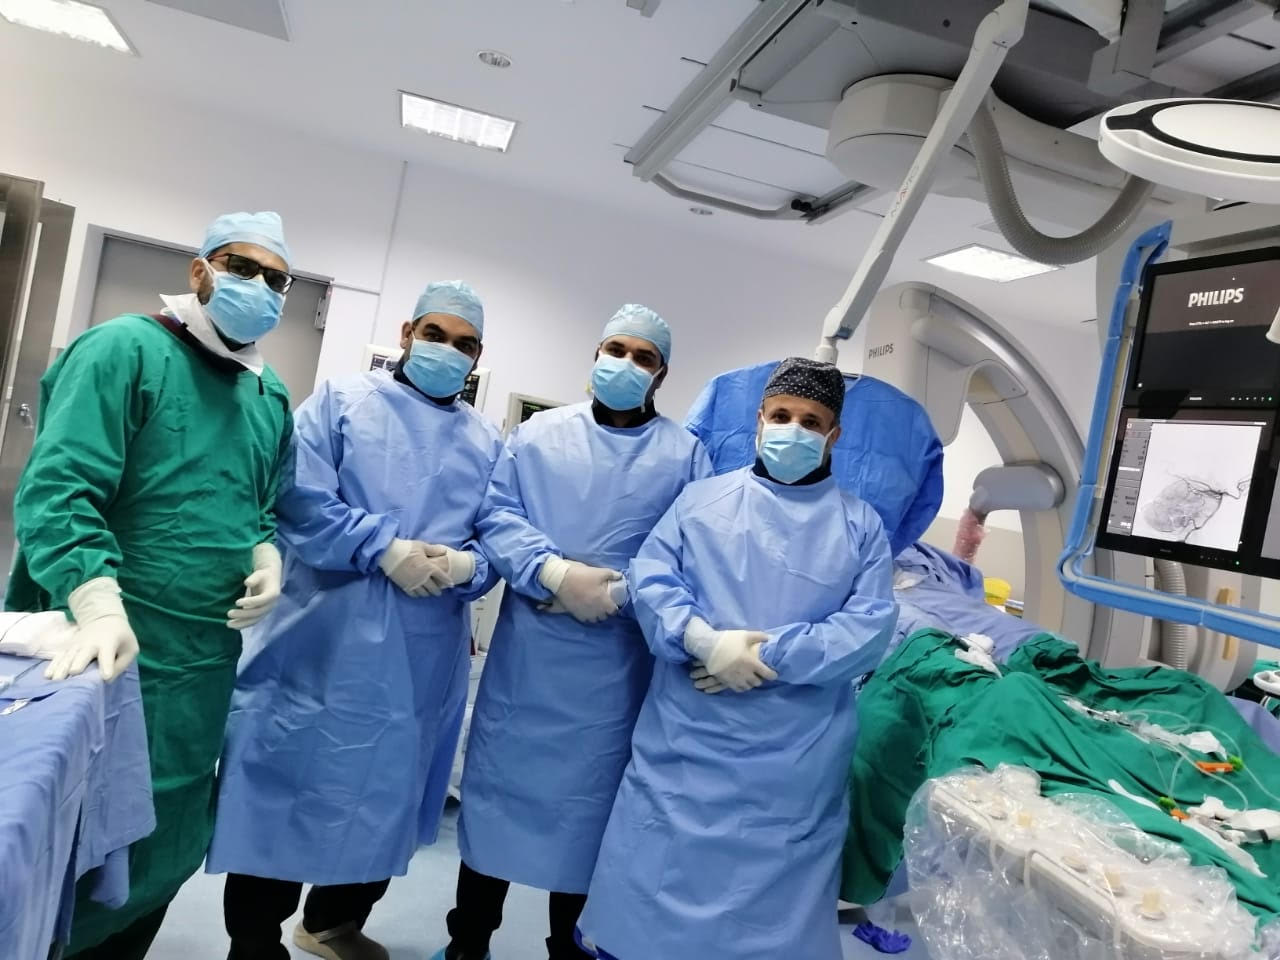 وحدة القسطرة الدماغية في المستشفى السعودي الألماني بالریاض تنجح في إنقاذ مريض من الشلل التام